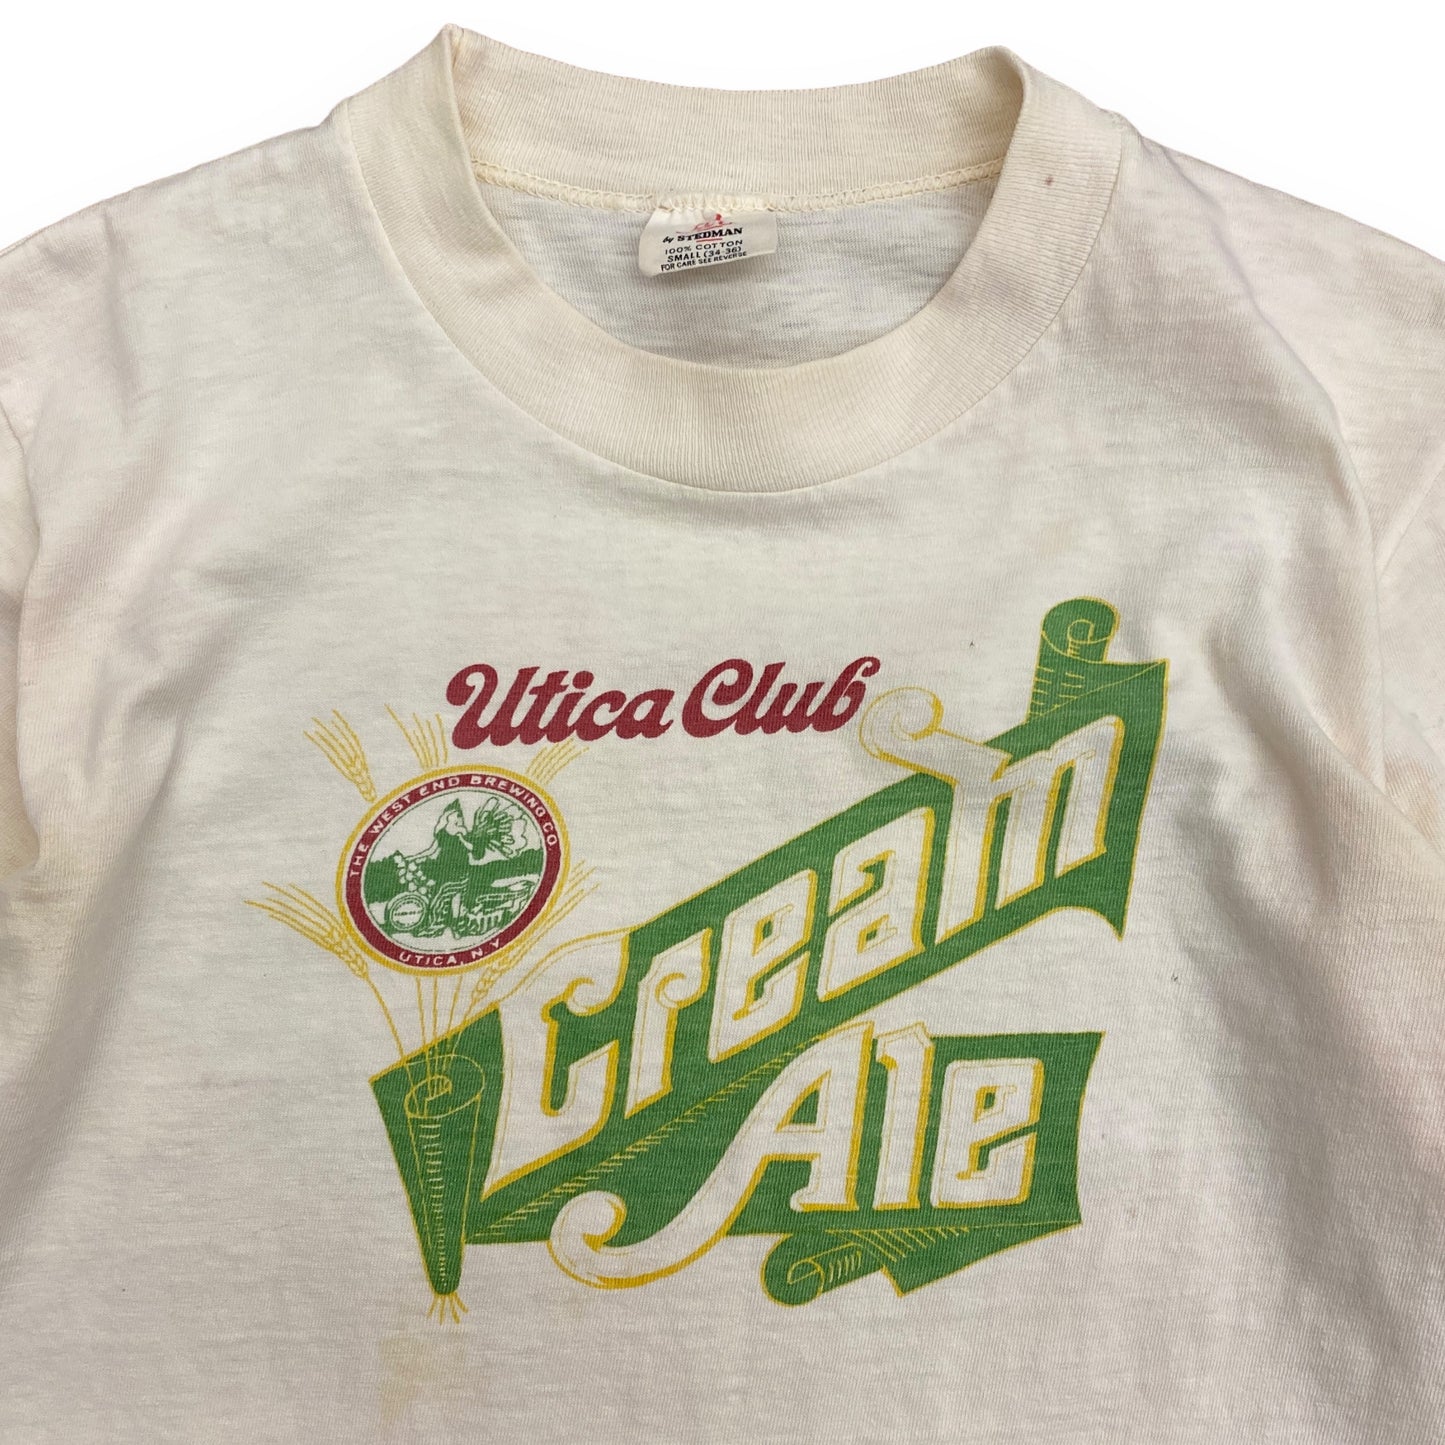 1970s "Utica Club Cream Ale" Logo Tee - Size Small